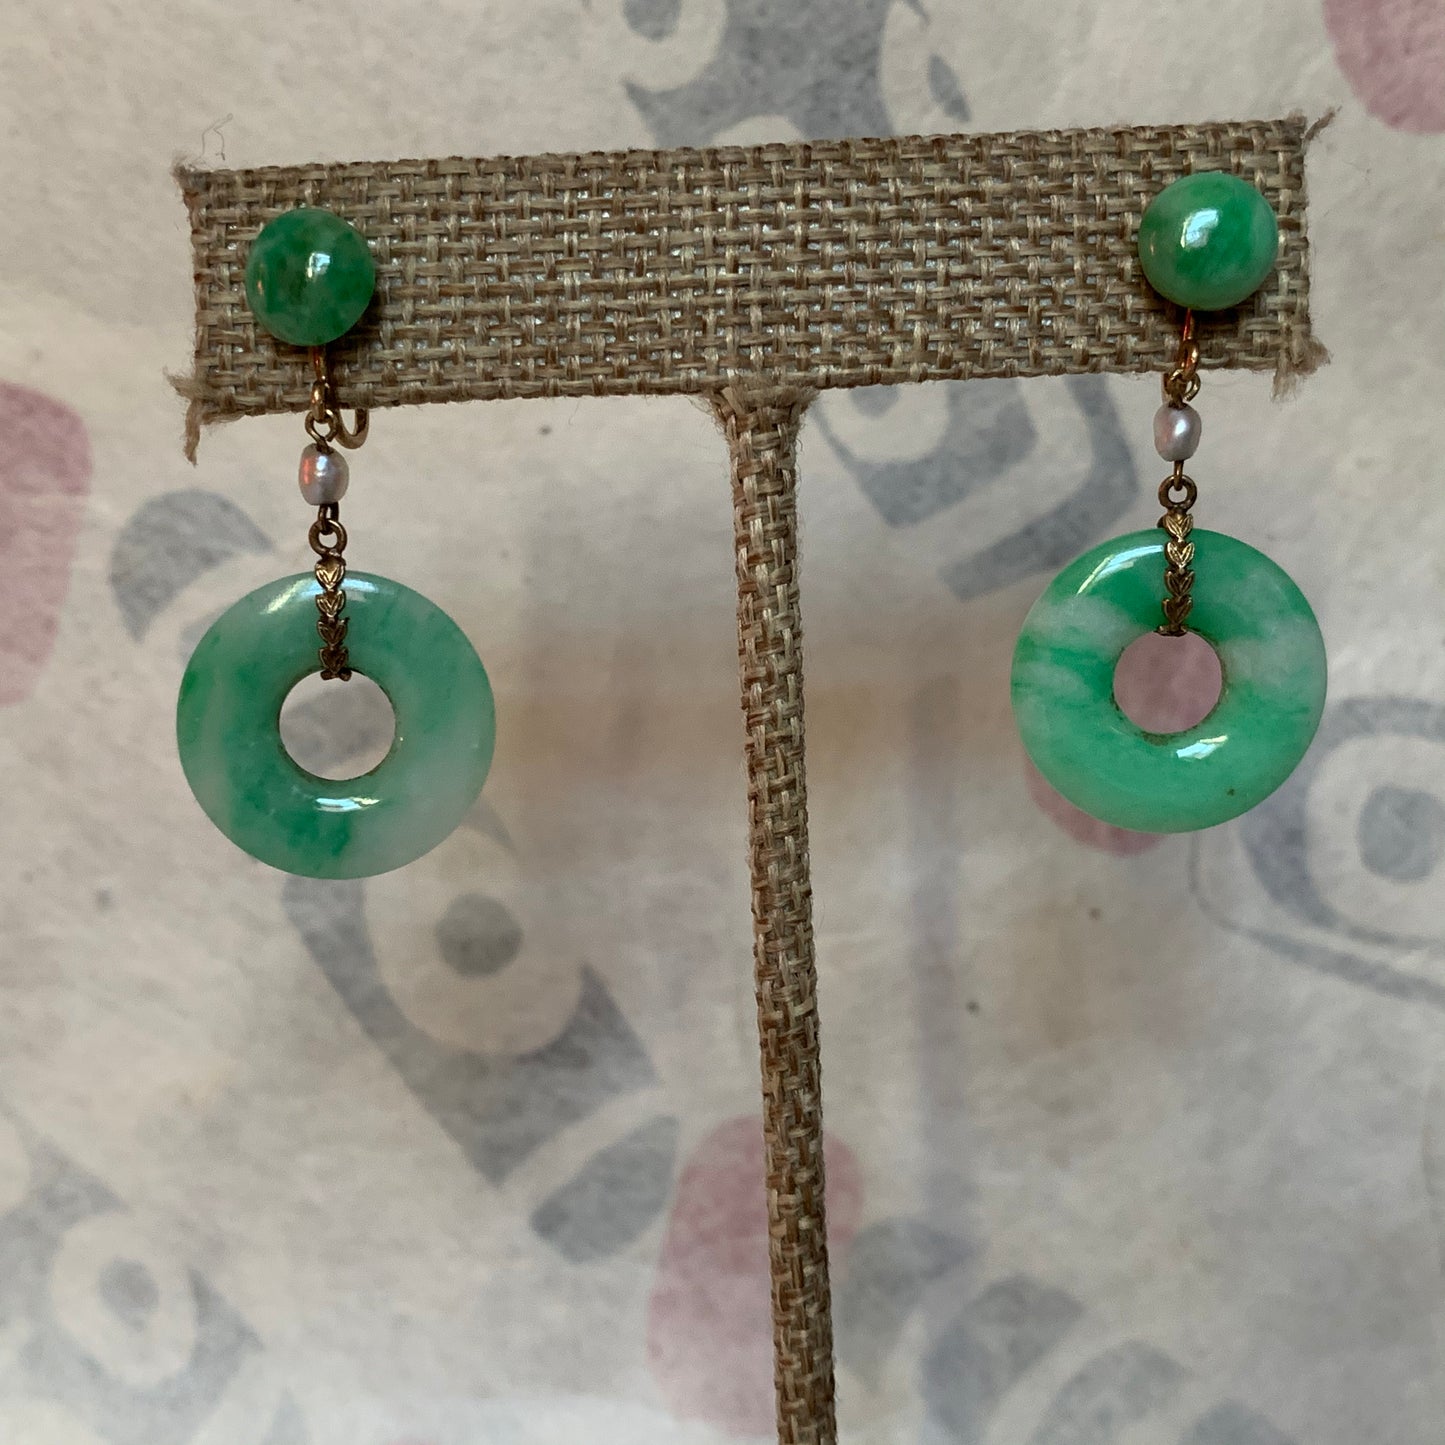 A pair of jade earrings